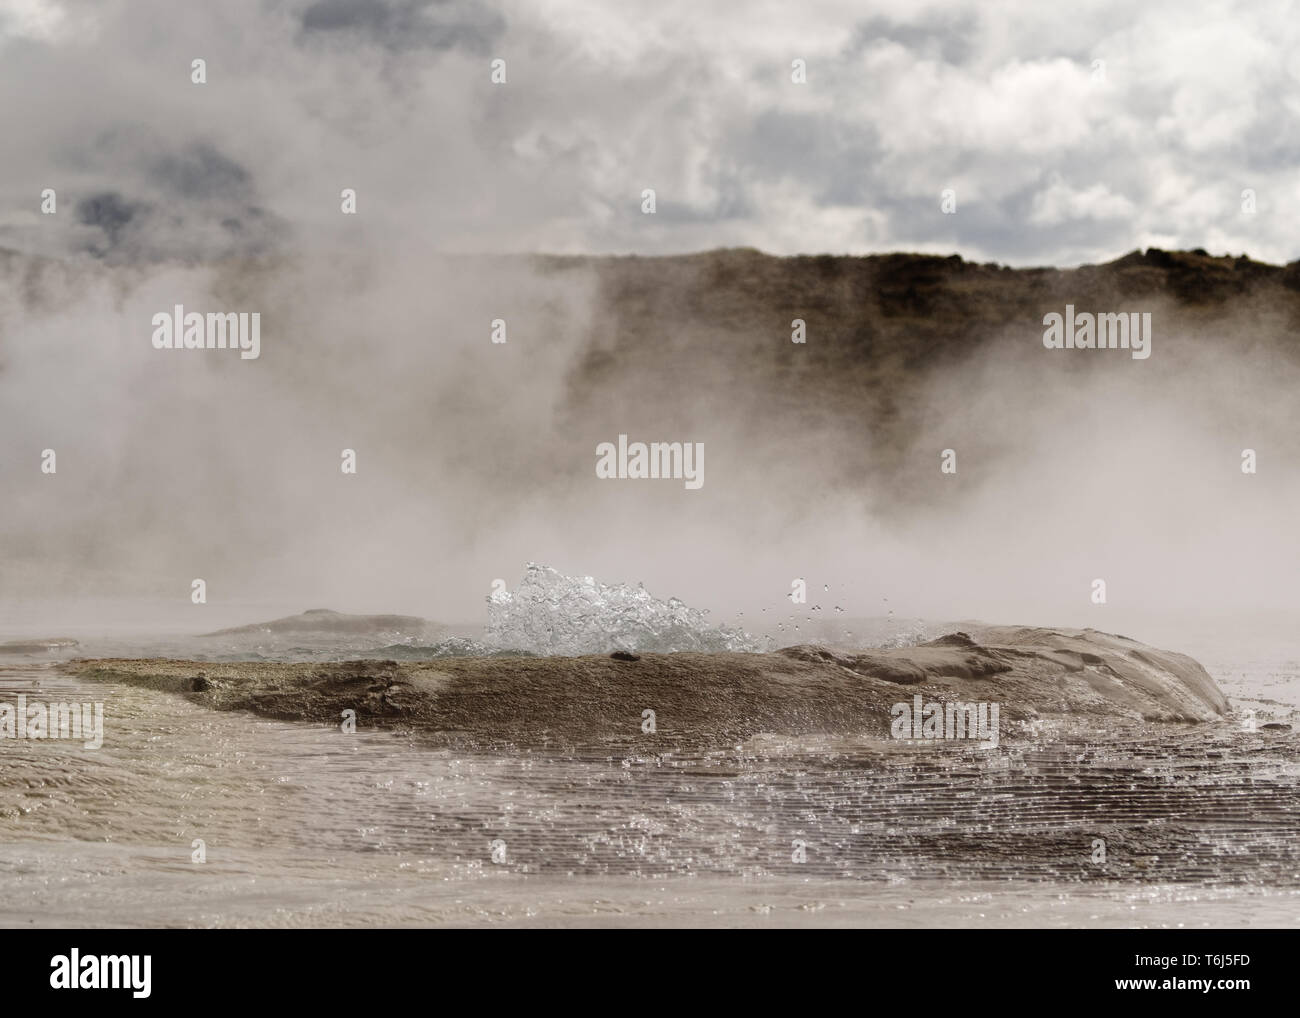 Geothermale Region mit starken Dampfauslass, Zentrum eines Beckens, wo heisses Wasser blasen, mineralische Ablagerungen - Ort: Island Stockfoto